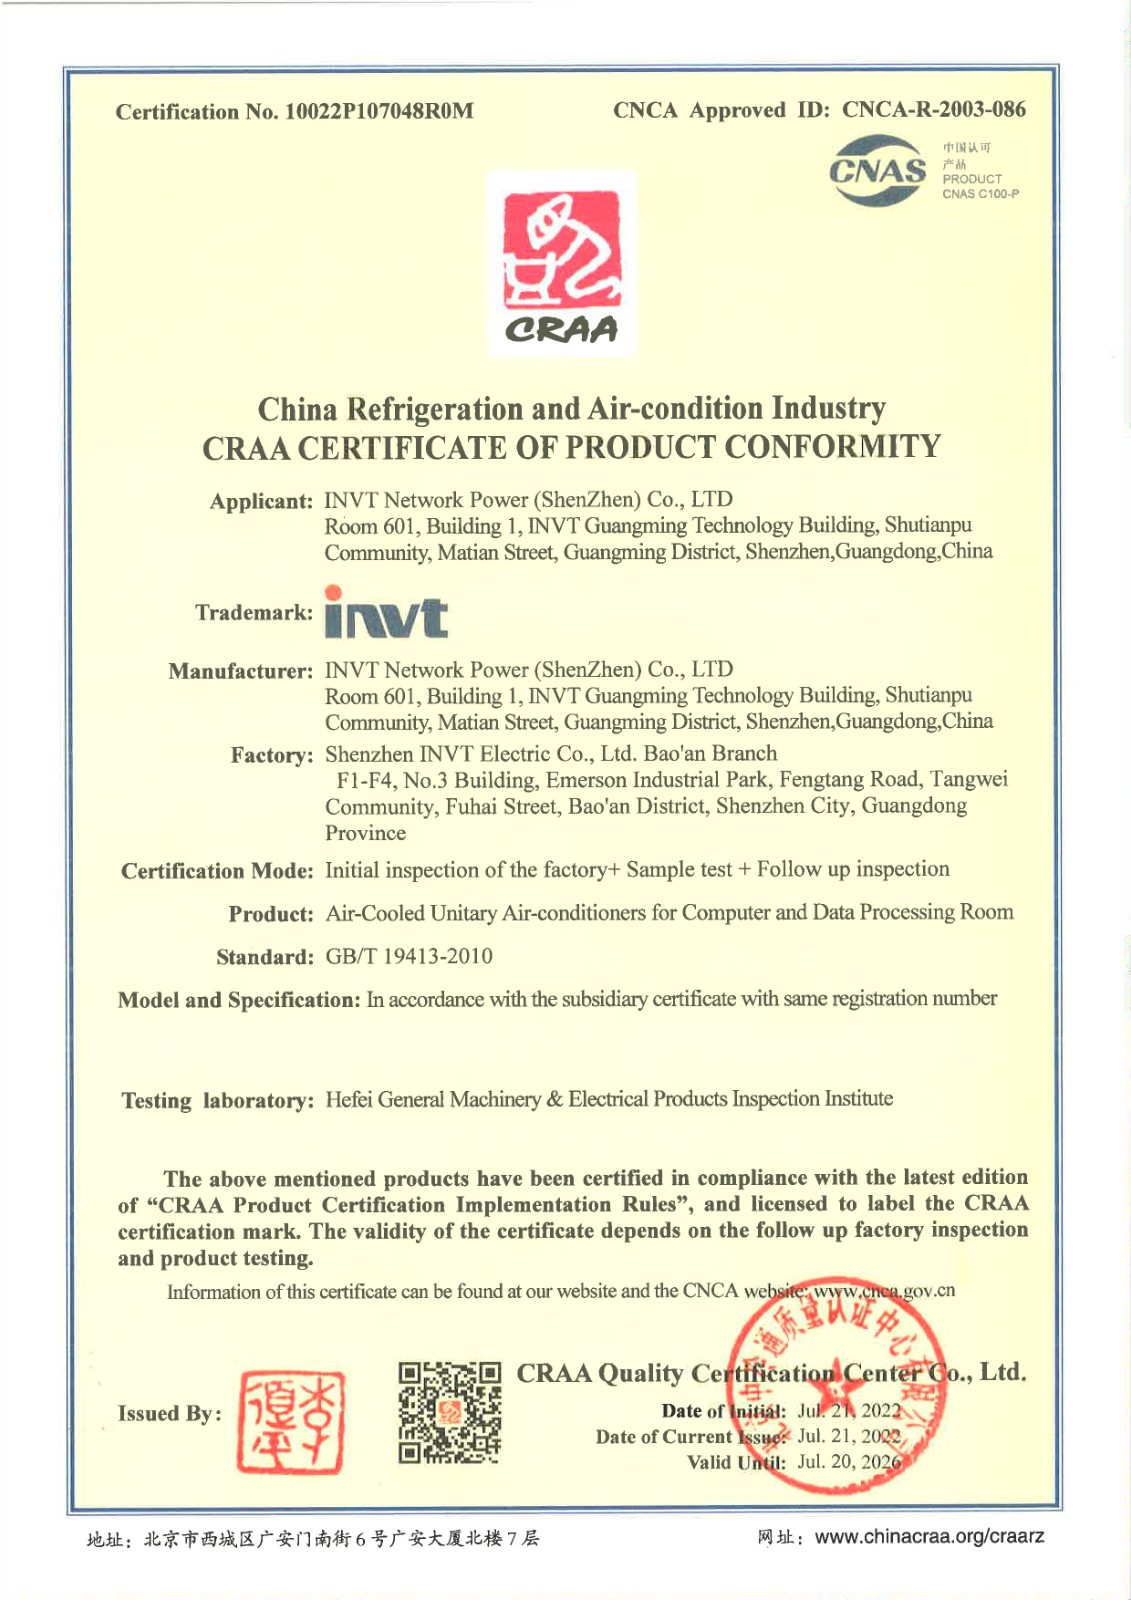 空调CRAA英文证书【有效期至2026年7月20日】_page-0001.jpg